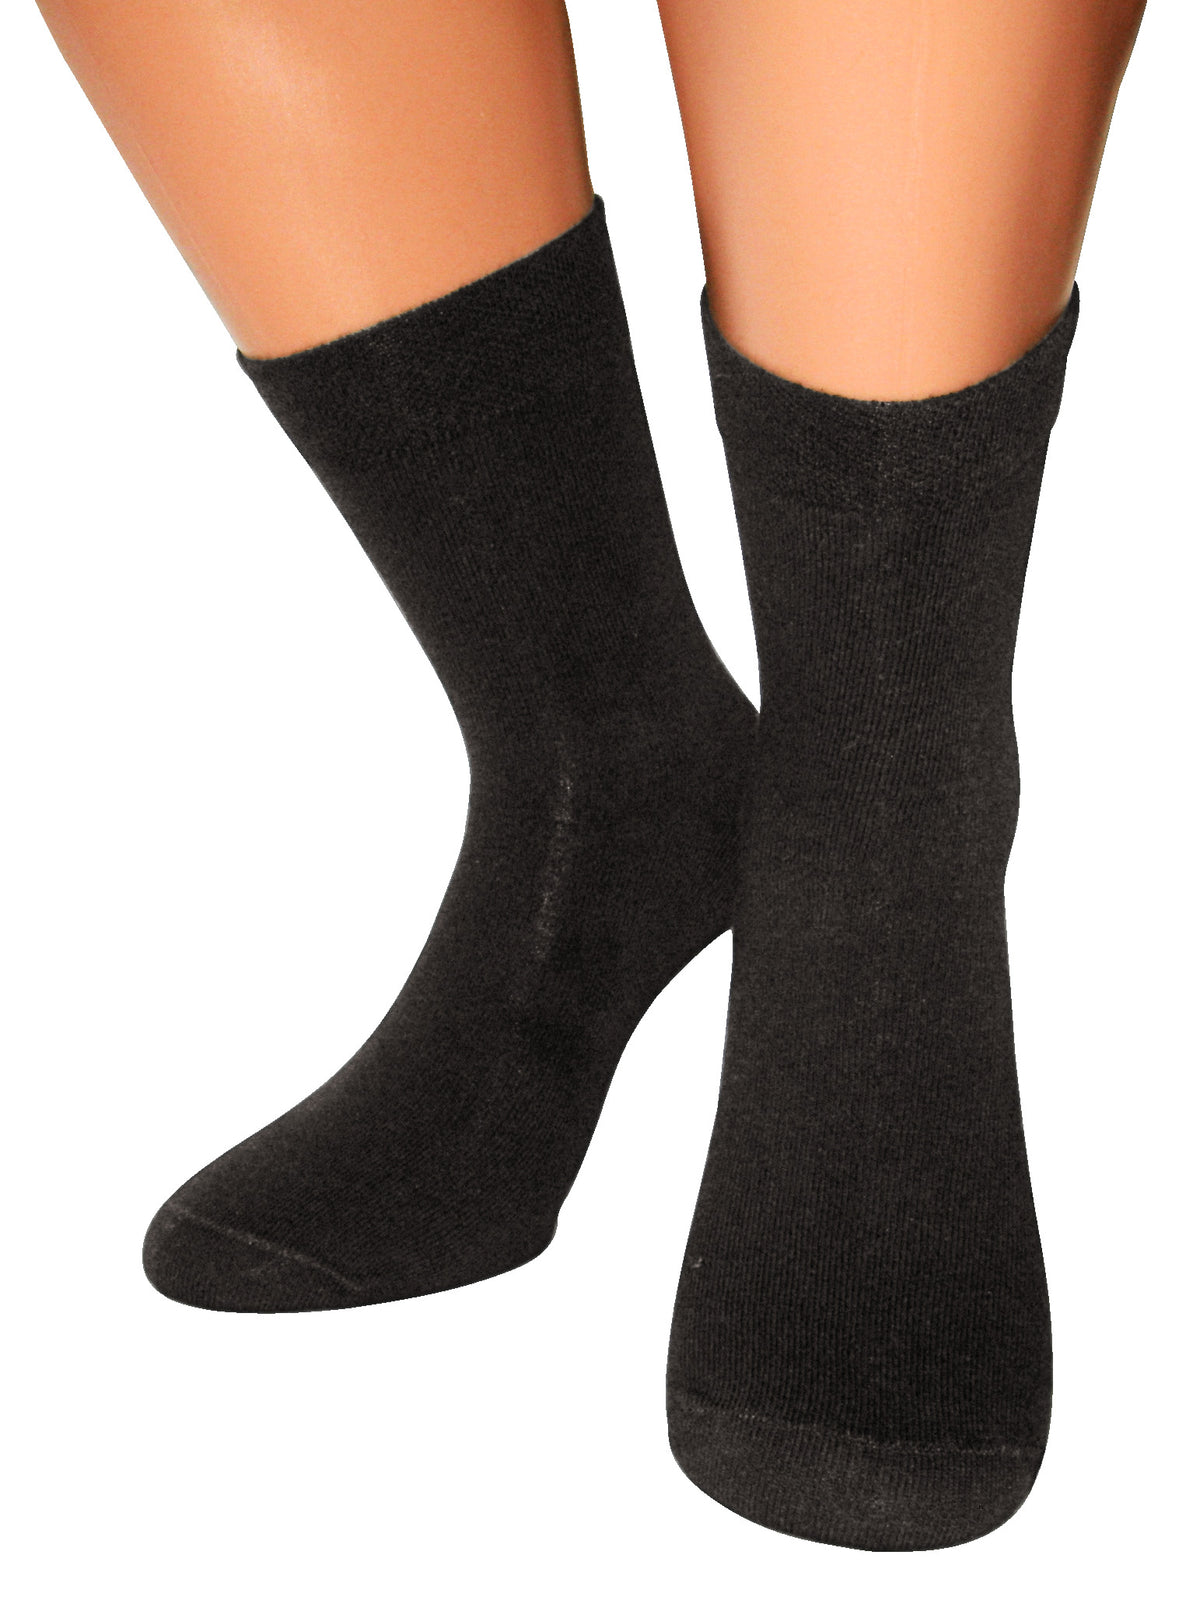 Sensitiv Socken, 1 Paar